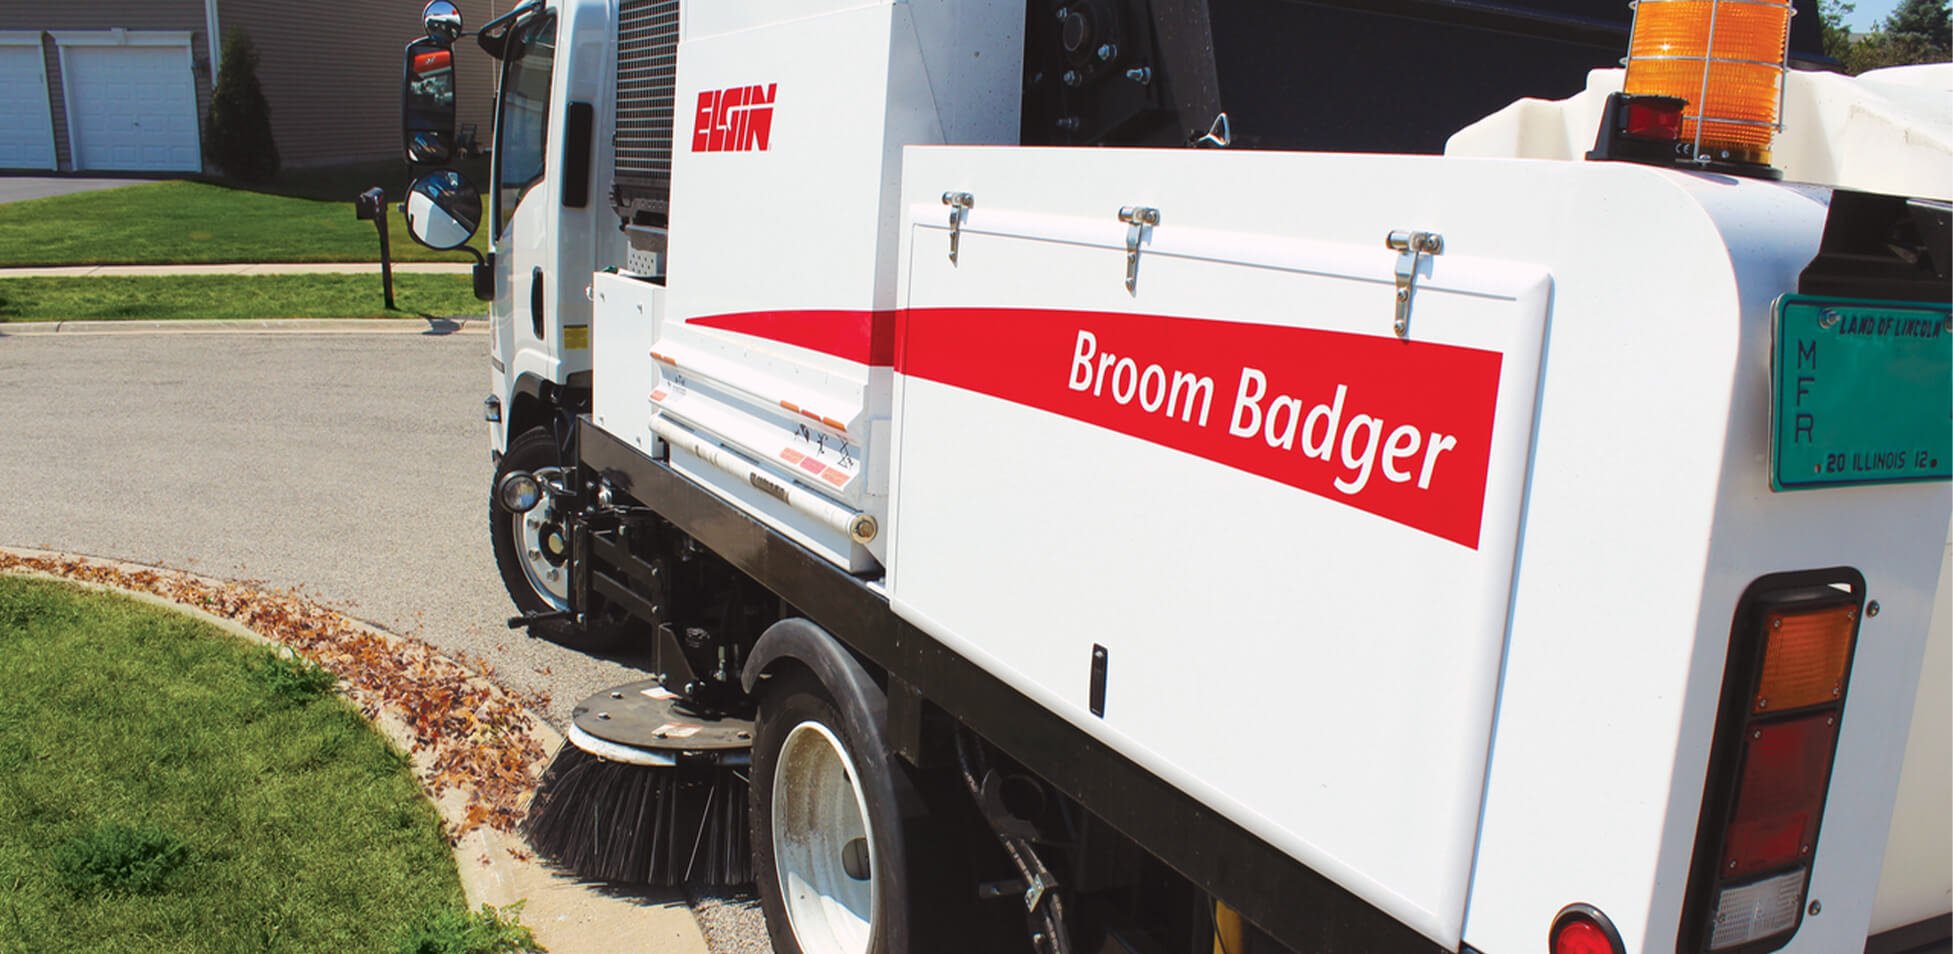 Elgin Broom Badger street sweeper cleaning sweeper